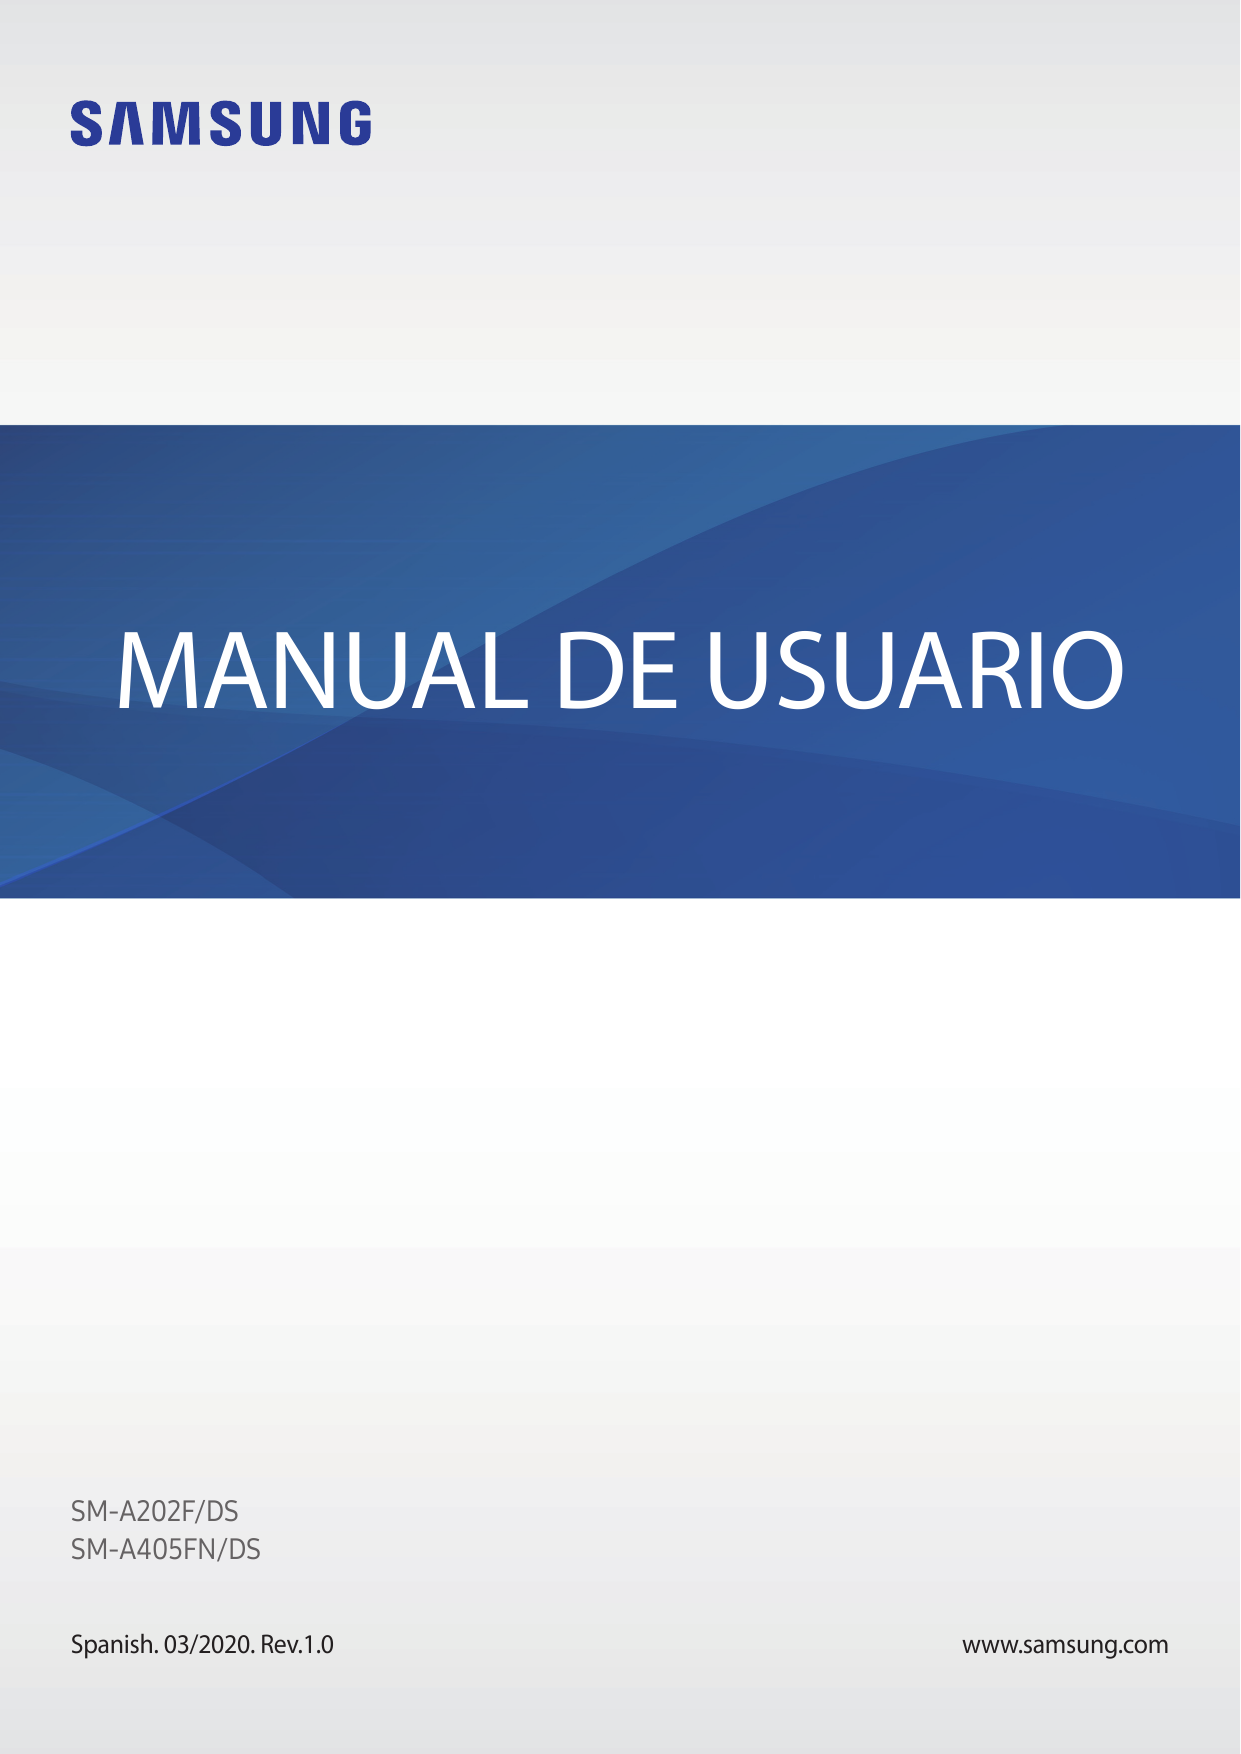 MANUAL DE USUARIOSM-A202F/DSSM-A405FN/DSSpanish. 03/2020. Rev.1.0www.samsung.com